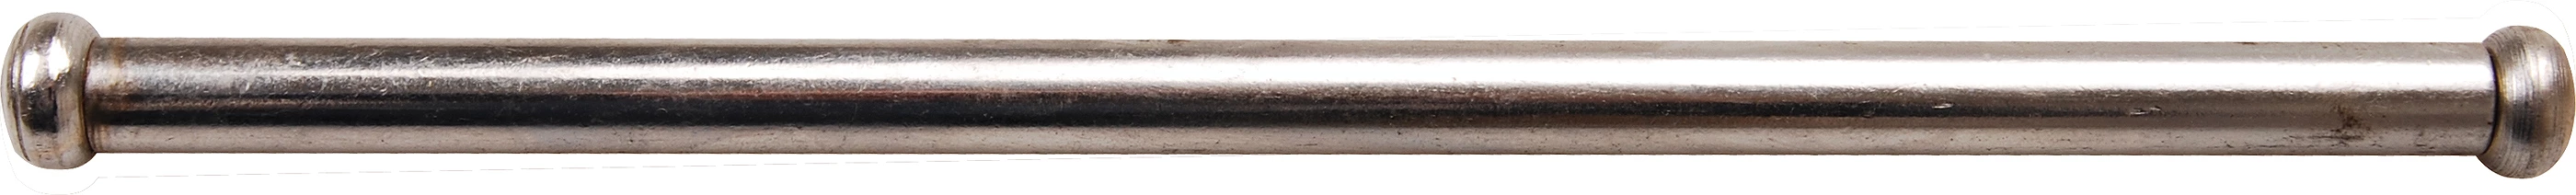 Stahlknebel für Schraubstöcke - 13 x 250 mm